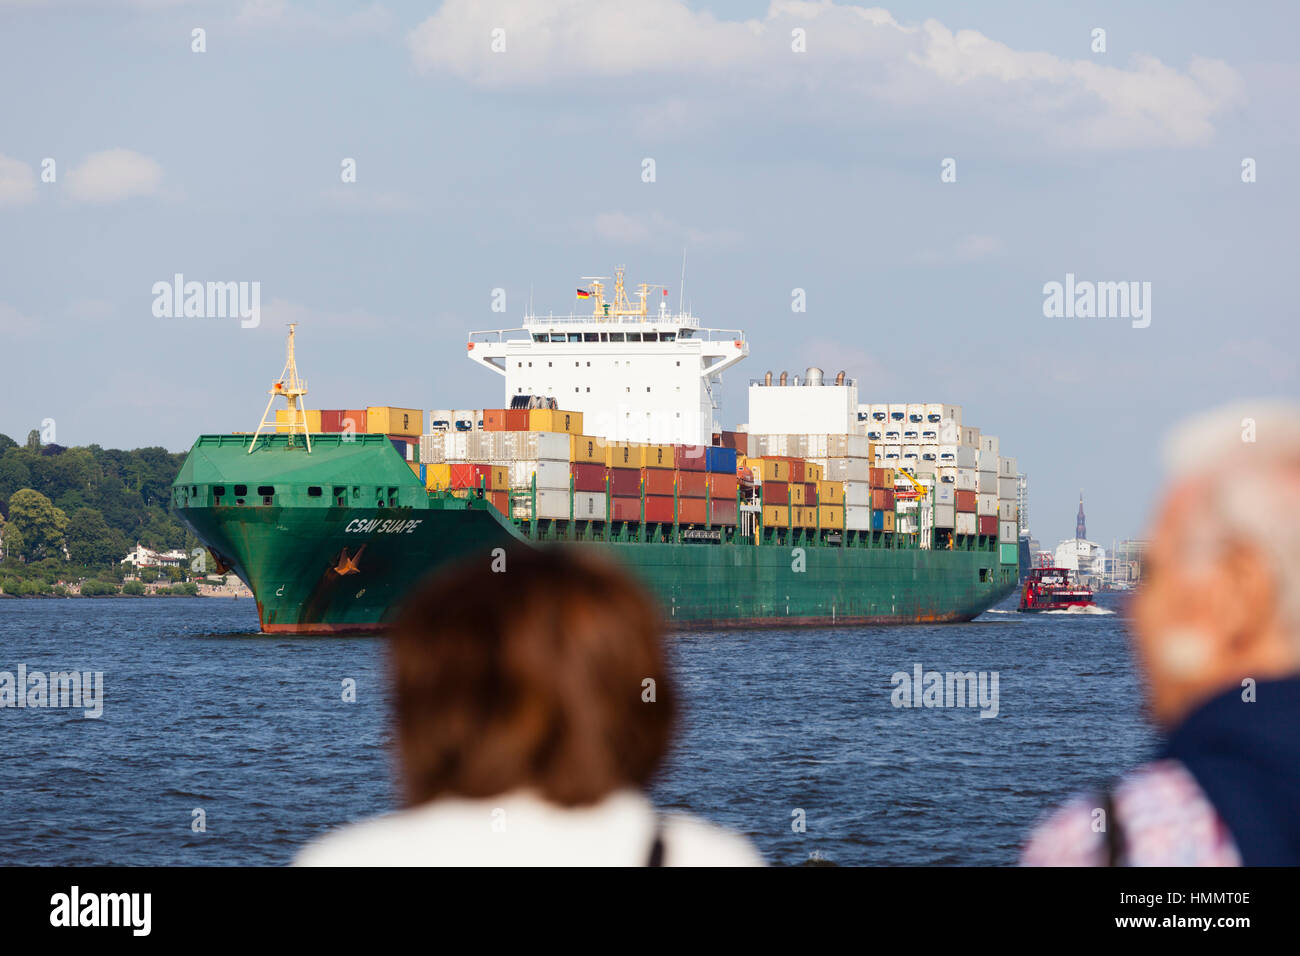 Hamburg, Deutschland - 5 Juli: Touristen beobachten ein Containerschiff auf der Elbe in Hamburg, Deutschland am 5. Juli 2013 Stockfoto